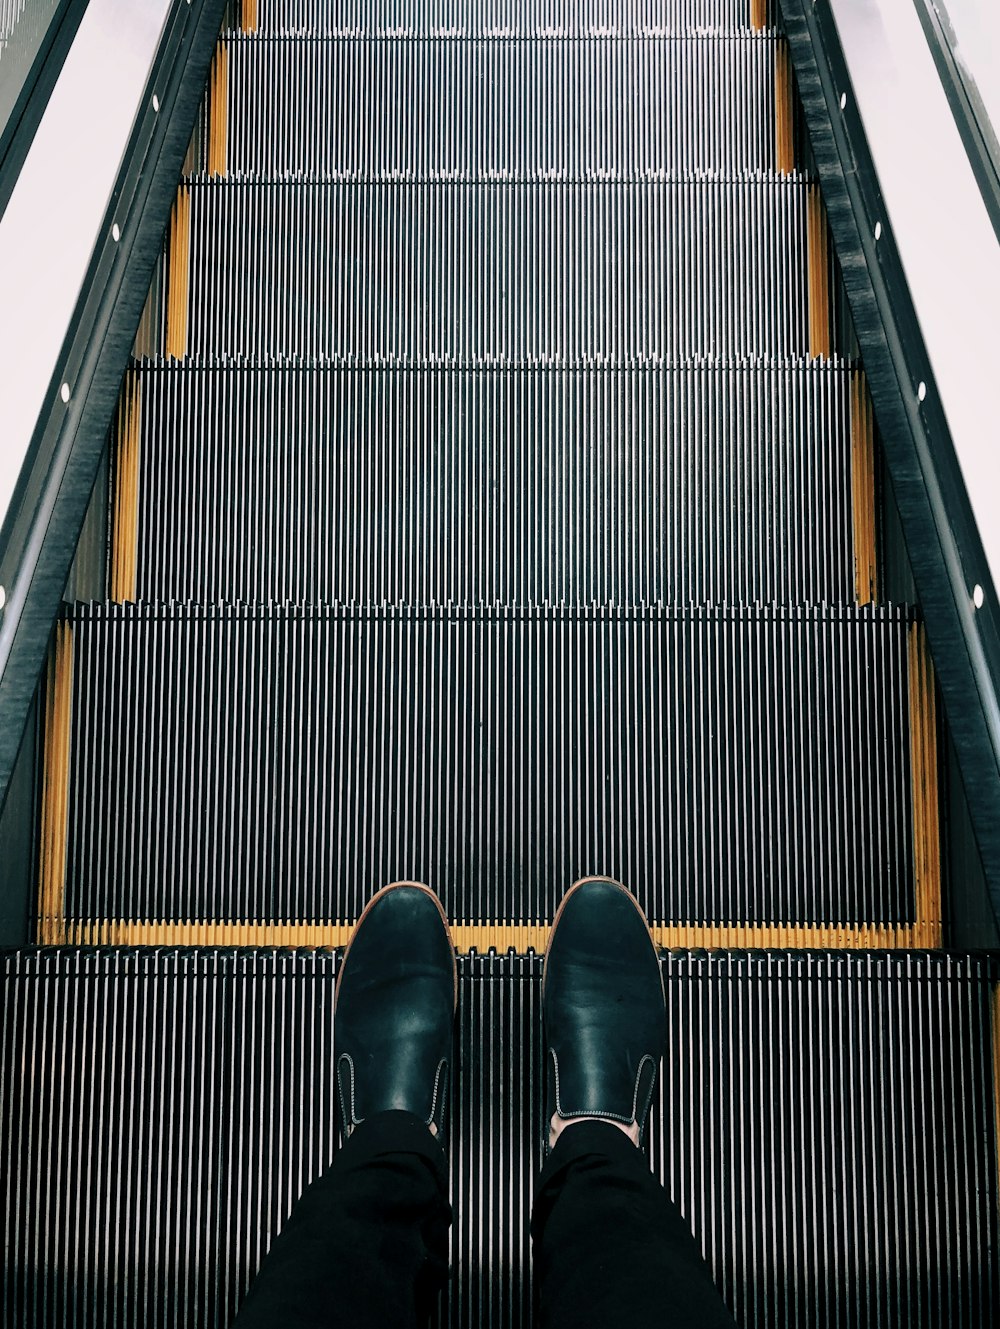 Persona parada en la escalera mecánica